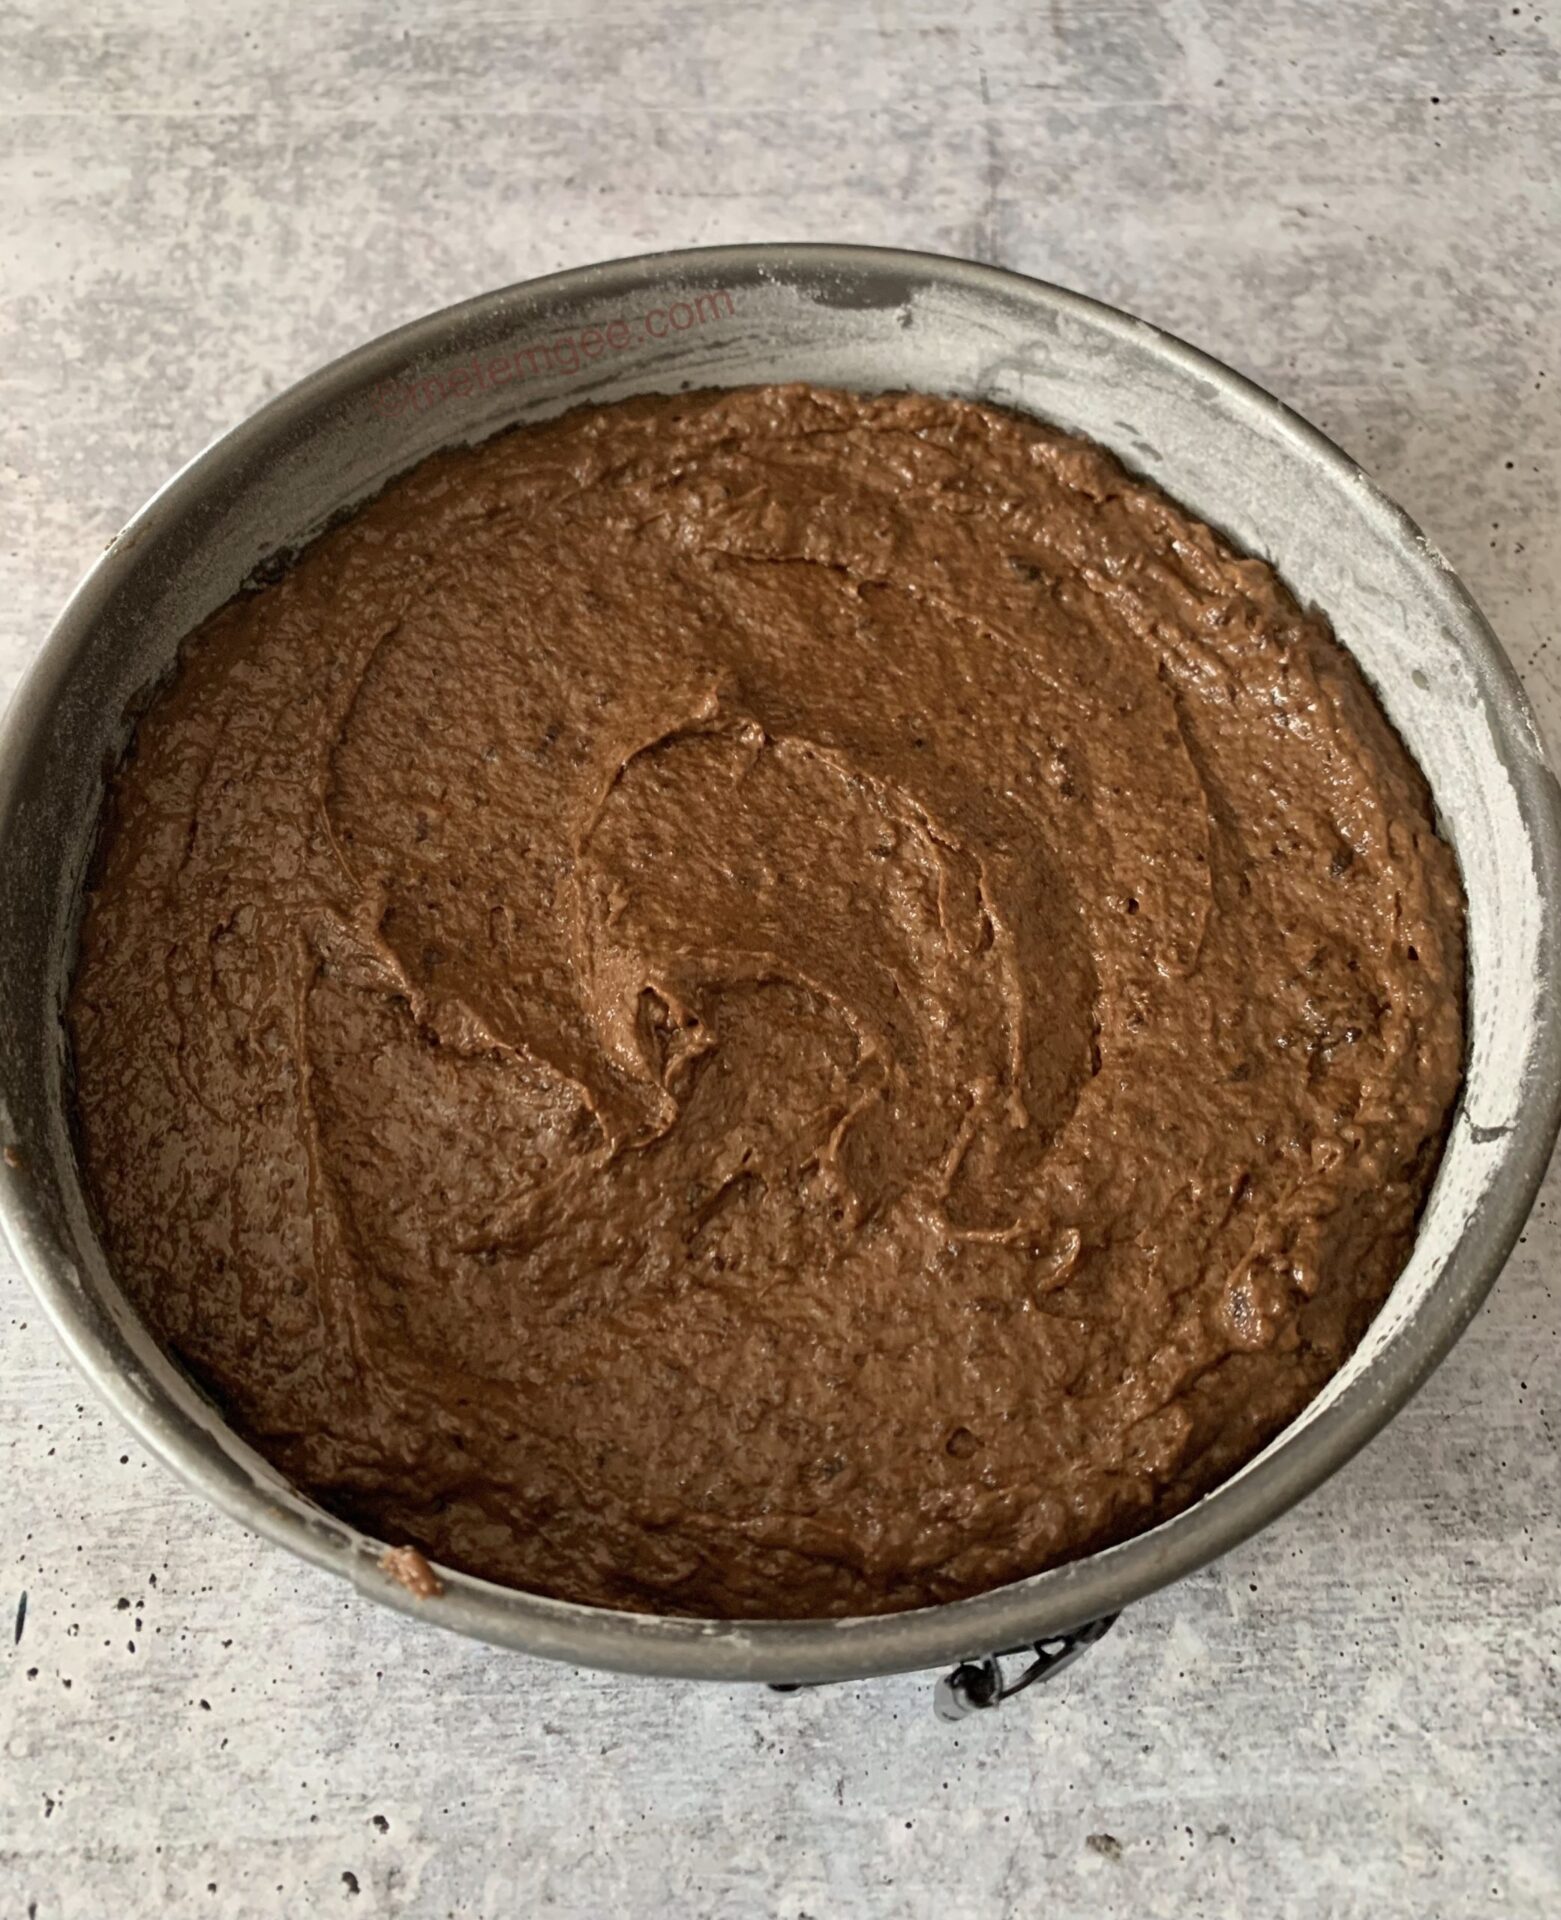 Guyanese black cake batter in a pan